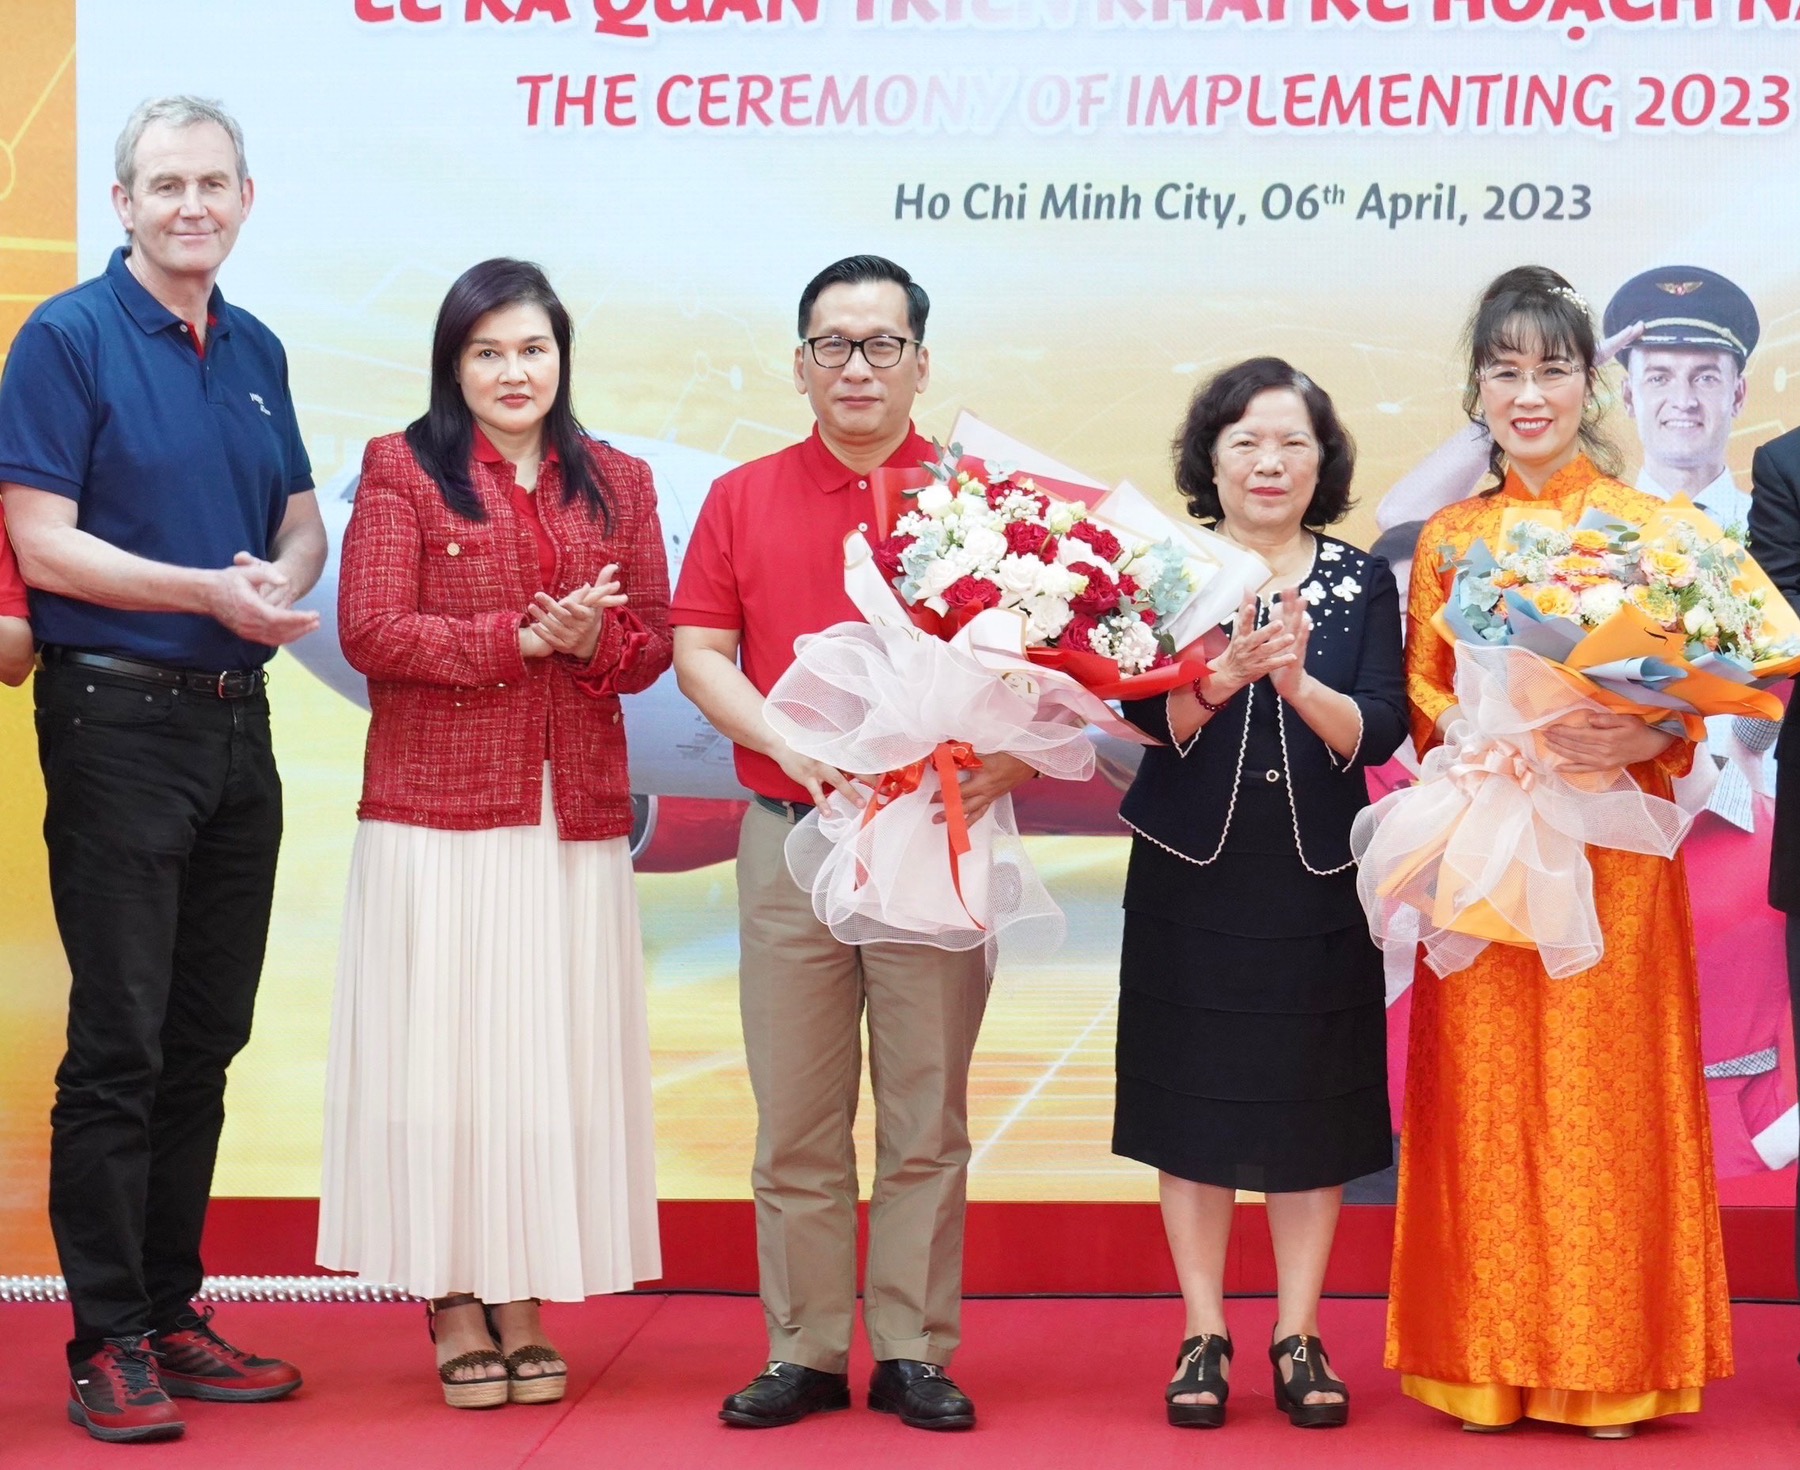 Kinh tế - Bà Nguyễn Thị Phương Thảo làm Chủ tịch Hội đồng Quản trị, Vietjet có Tổng giám đốc mới